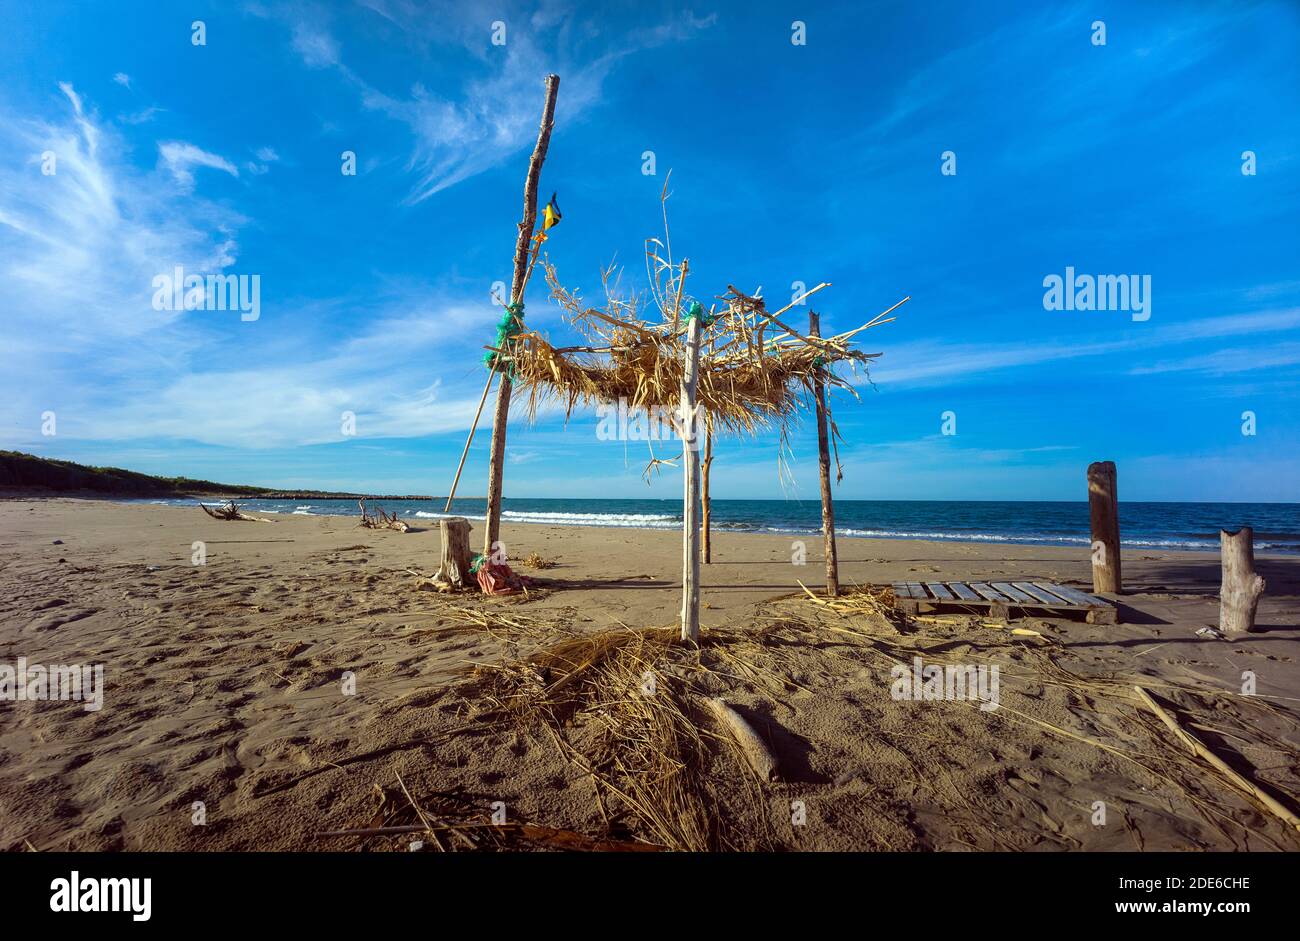 Campomarino, Molise, Italy: hut on the beach Stock Photo